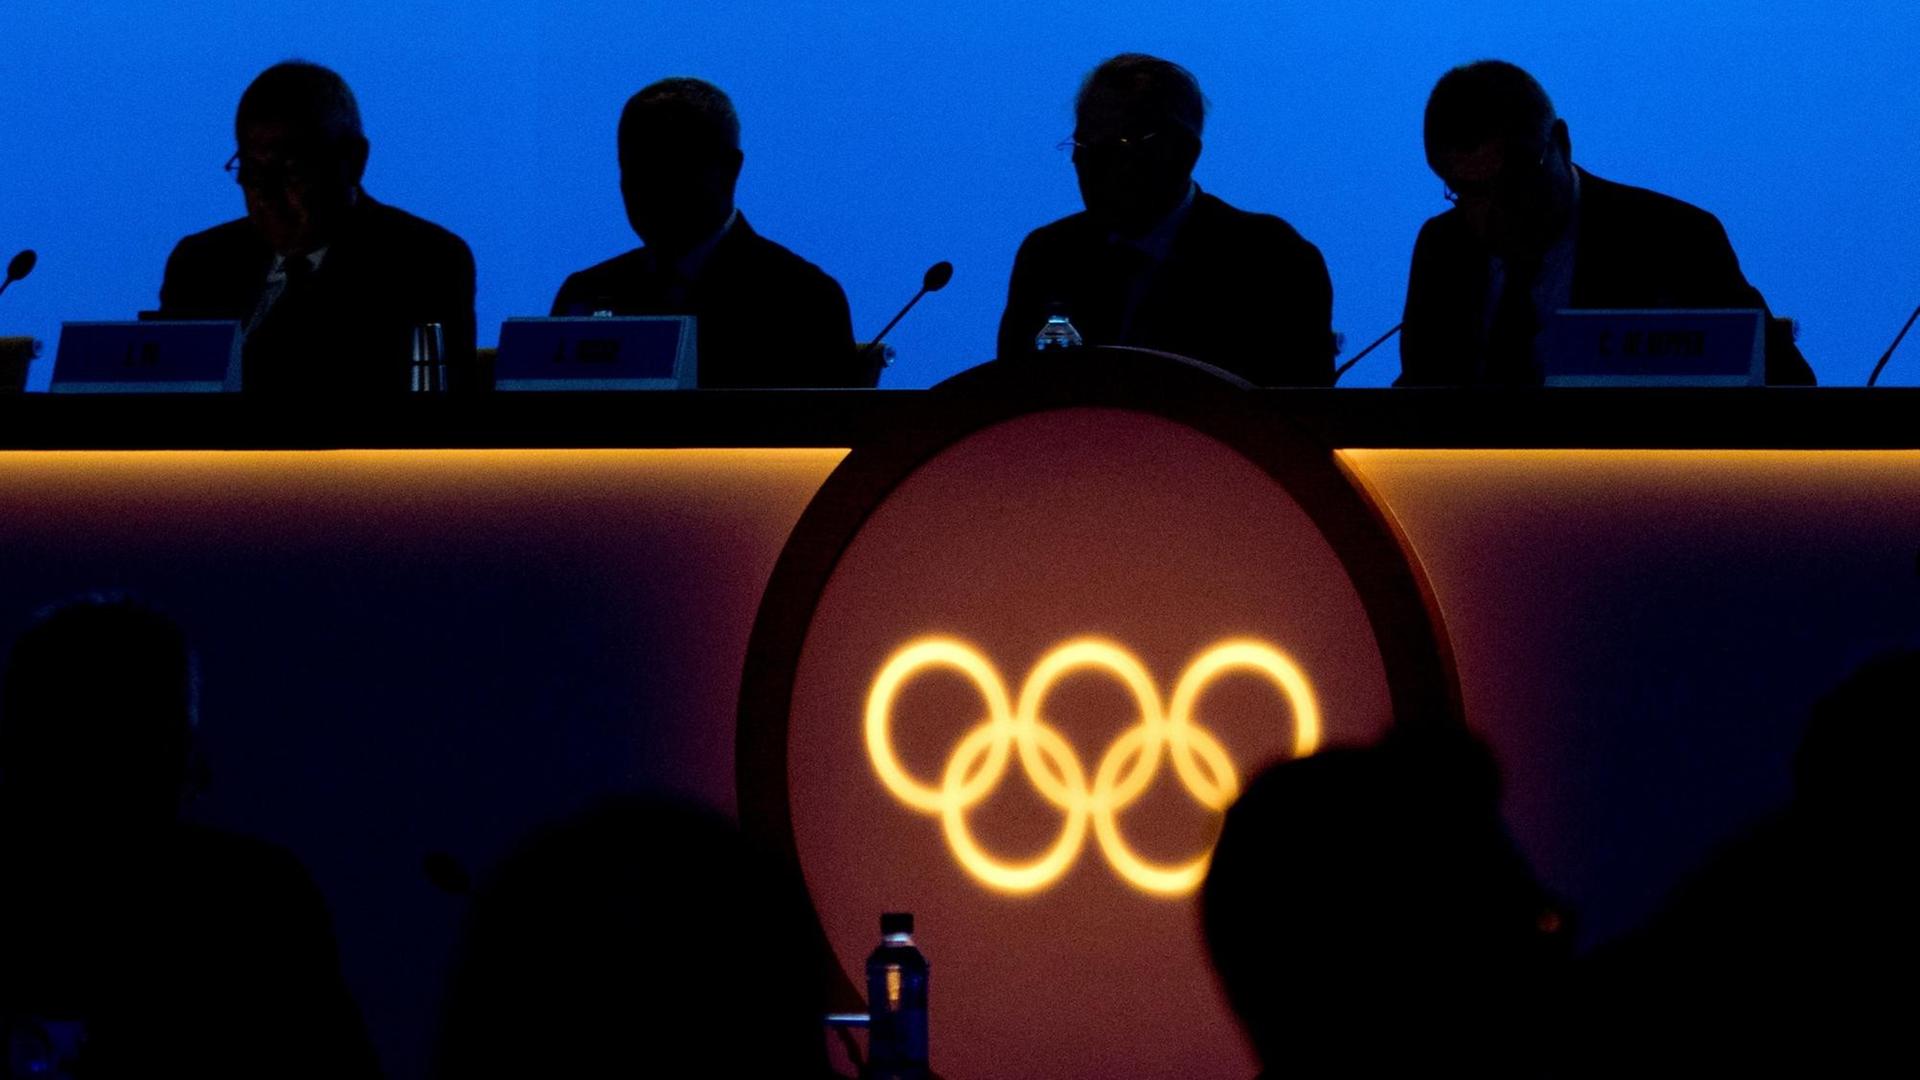 Kurz vor der Eröffnung der 132. IOC-Session in Pyeongchang, Südkorea am 7.2.2018 sitzen die IOC-Mitglieder noch im Dunkeln